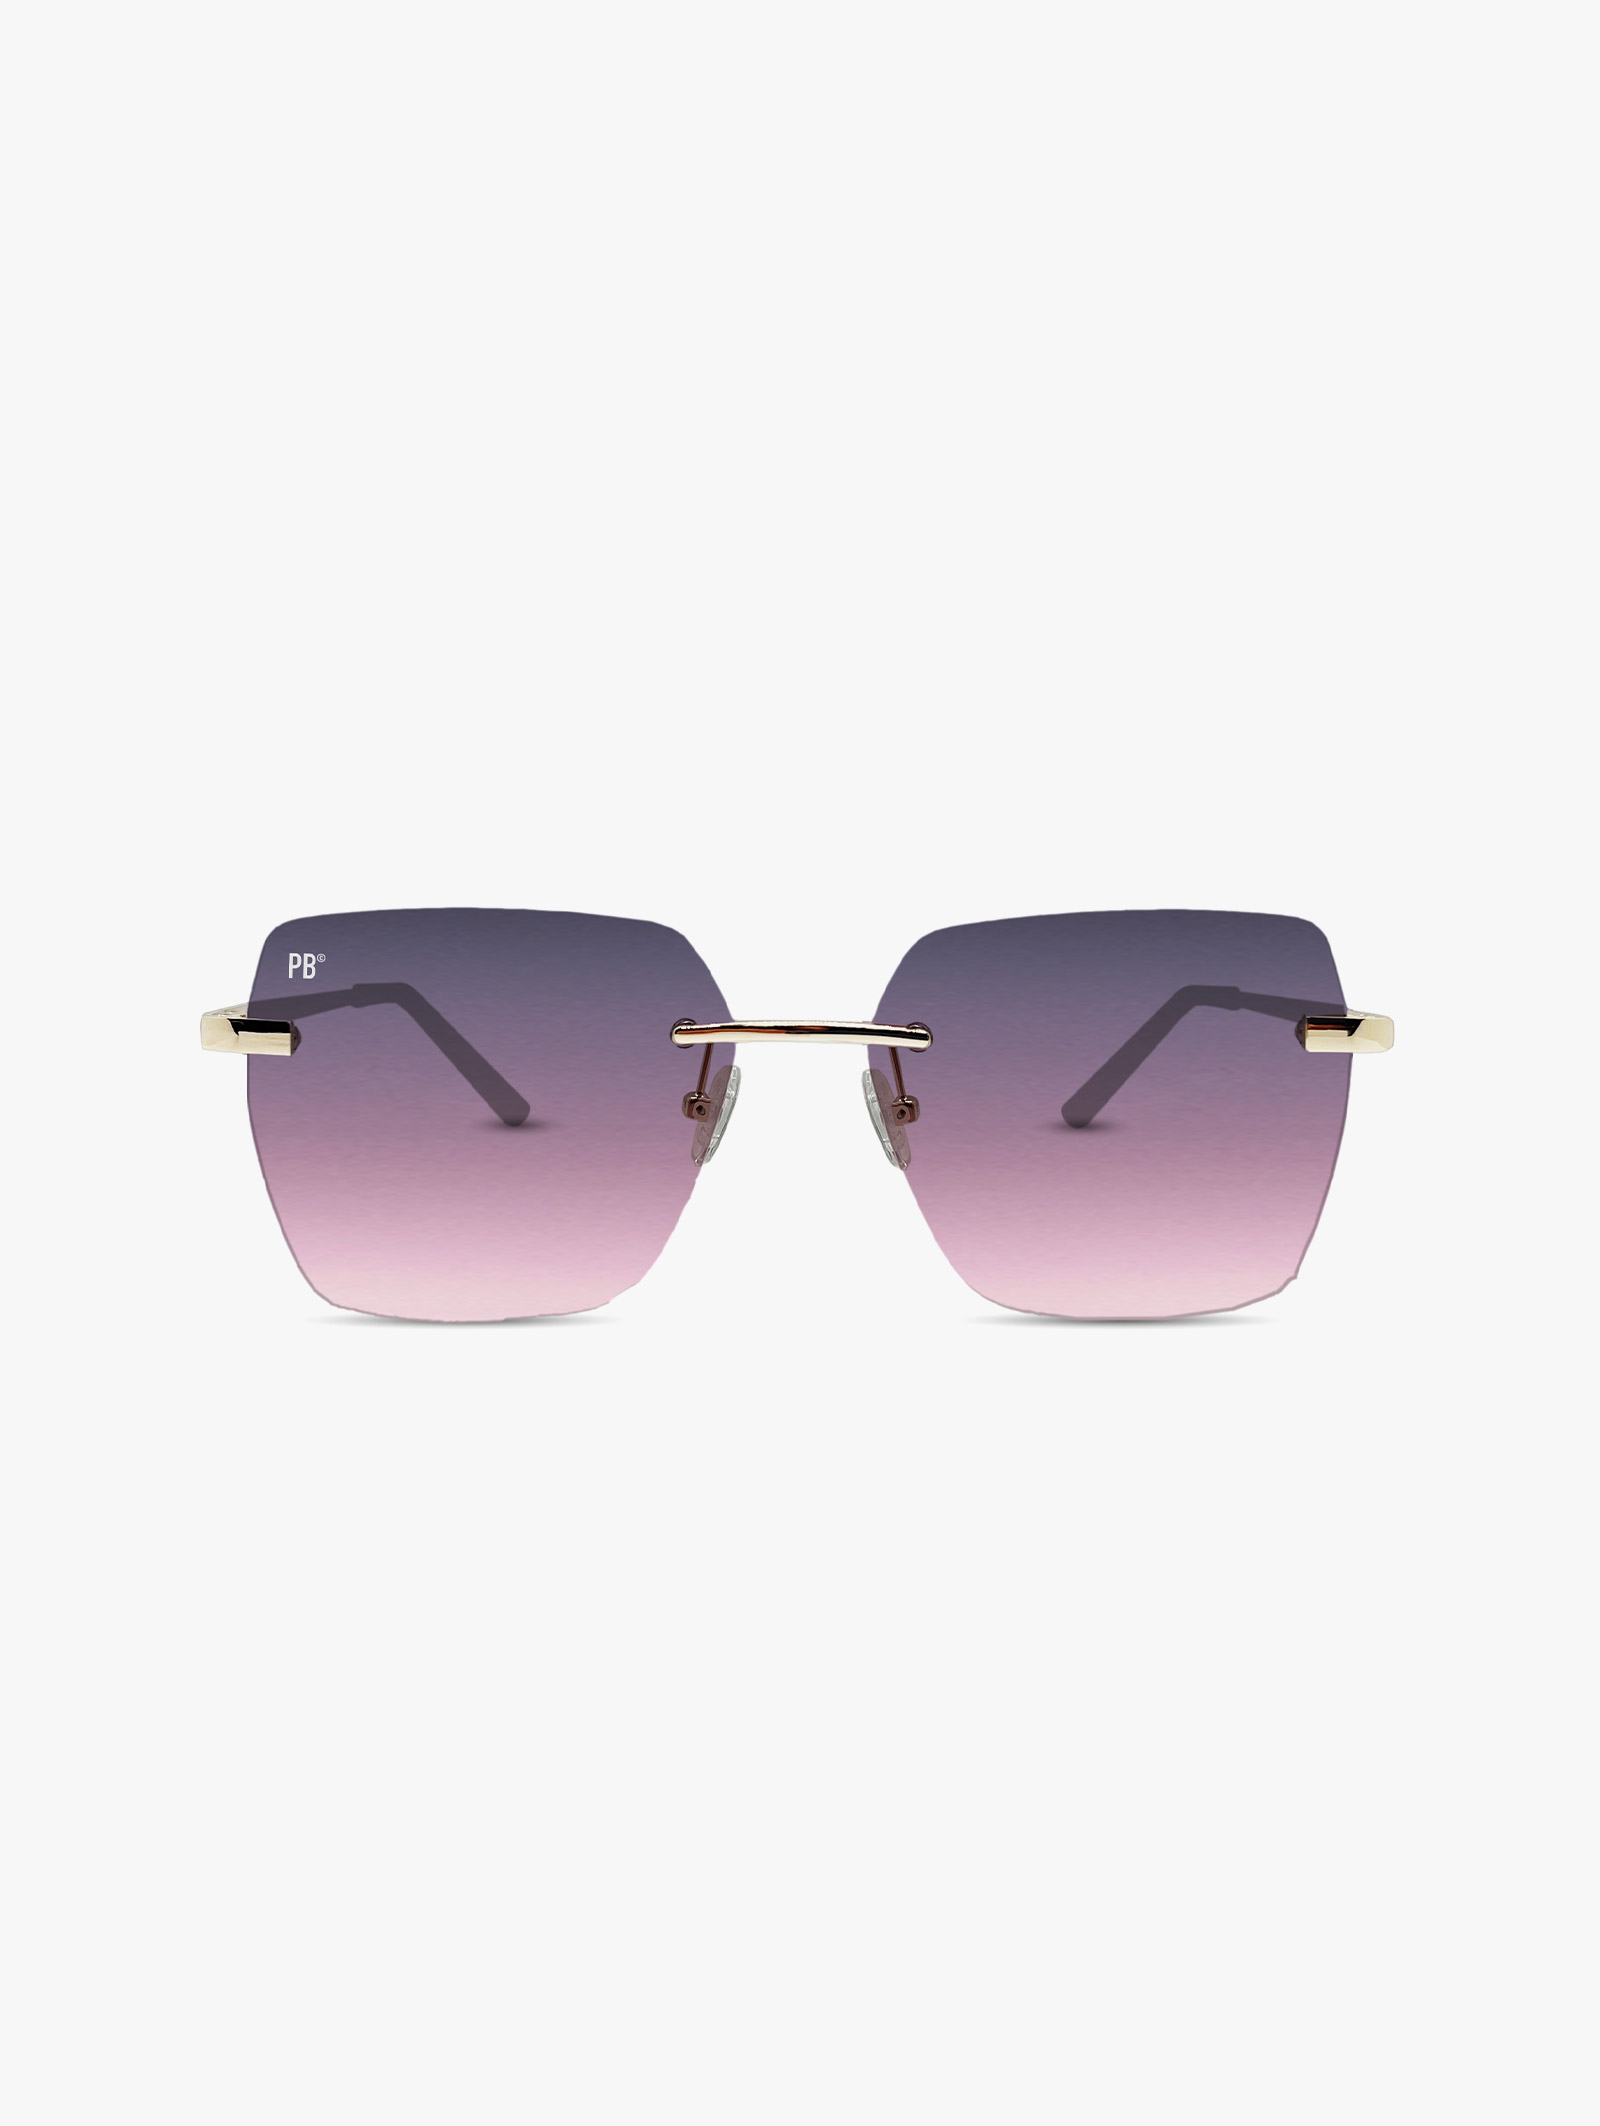 Florence Gradient Grey Pink PB Sunglasses Lunettes de soleil surdimensionnées